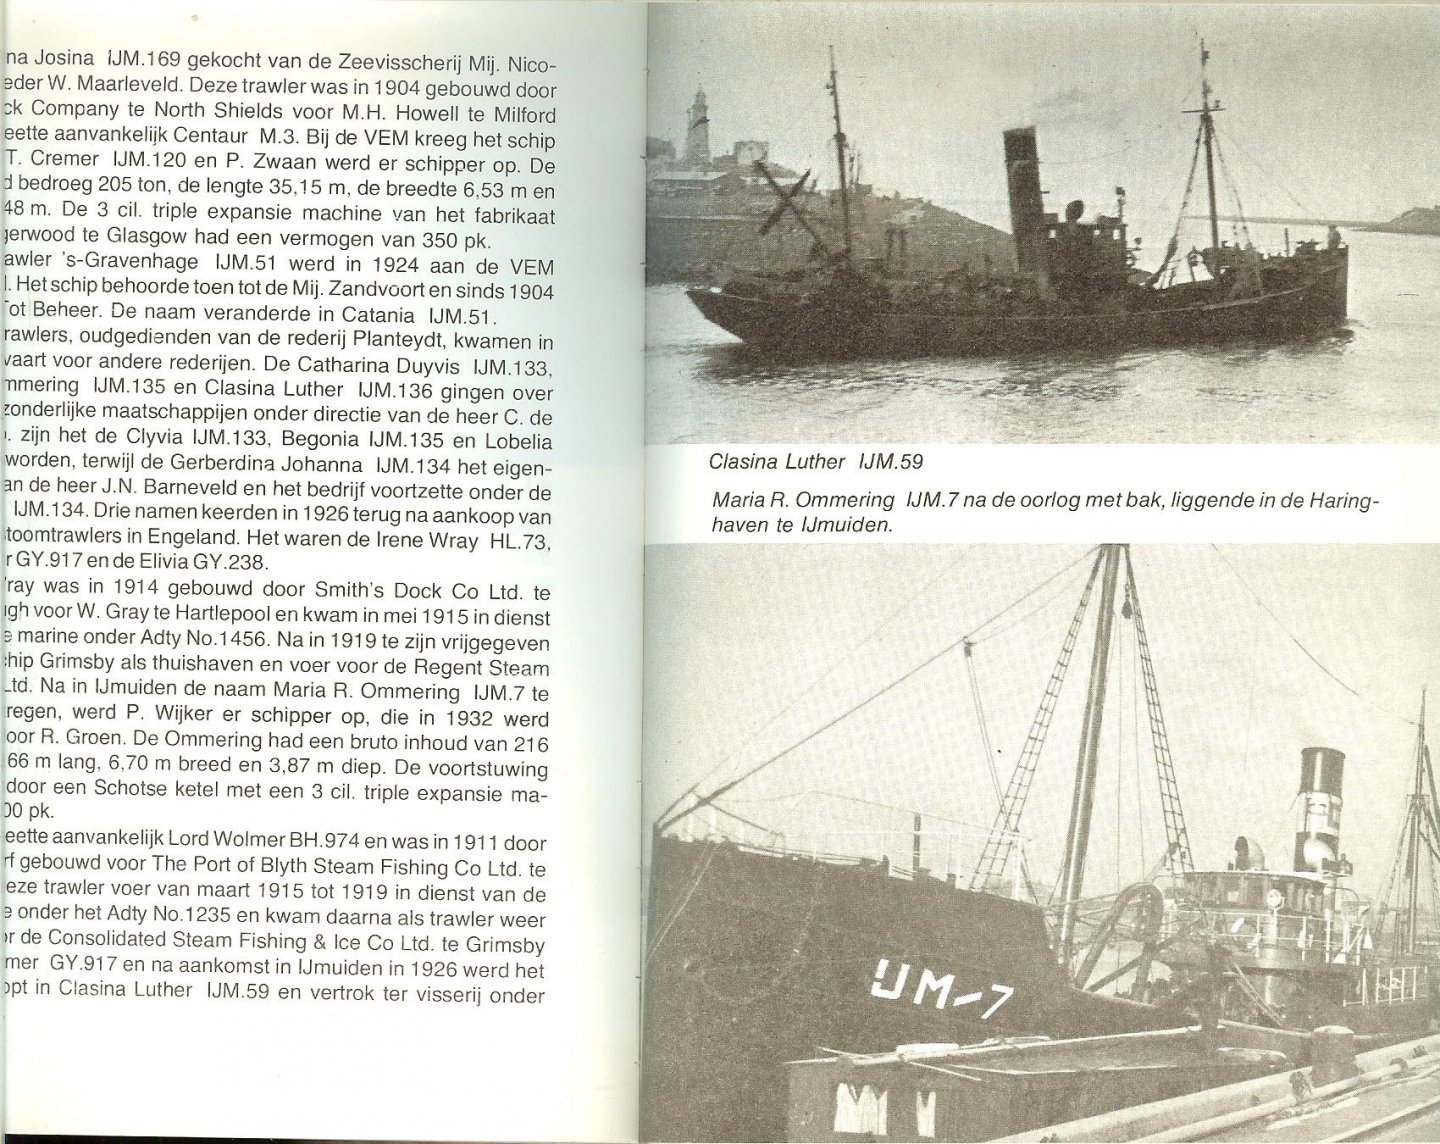 Veer, Arie van der - Zeevisserijschepen onder stoom Deel 1